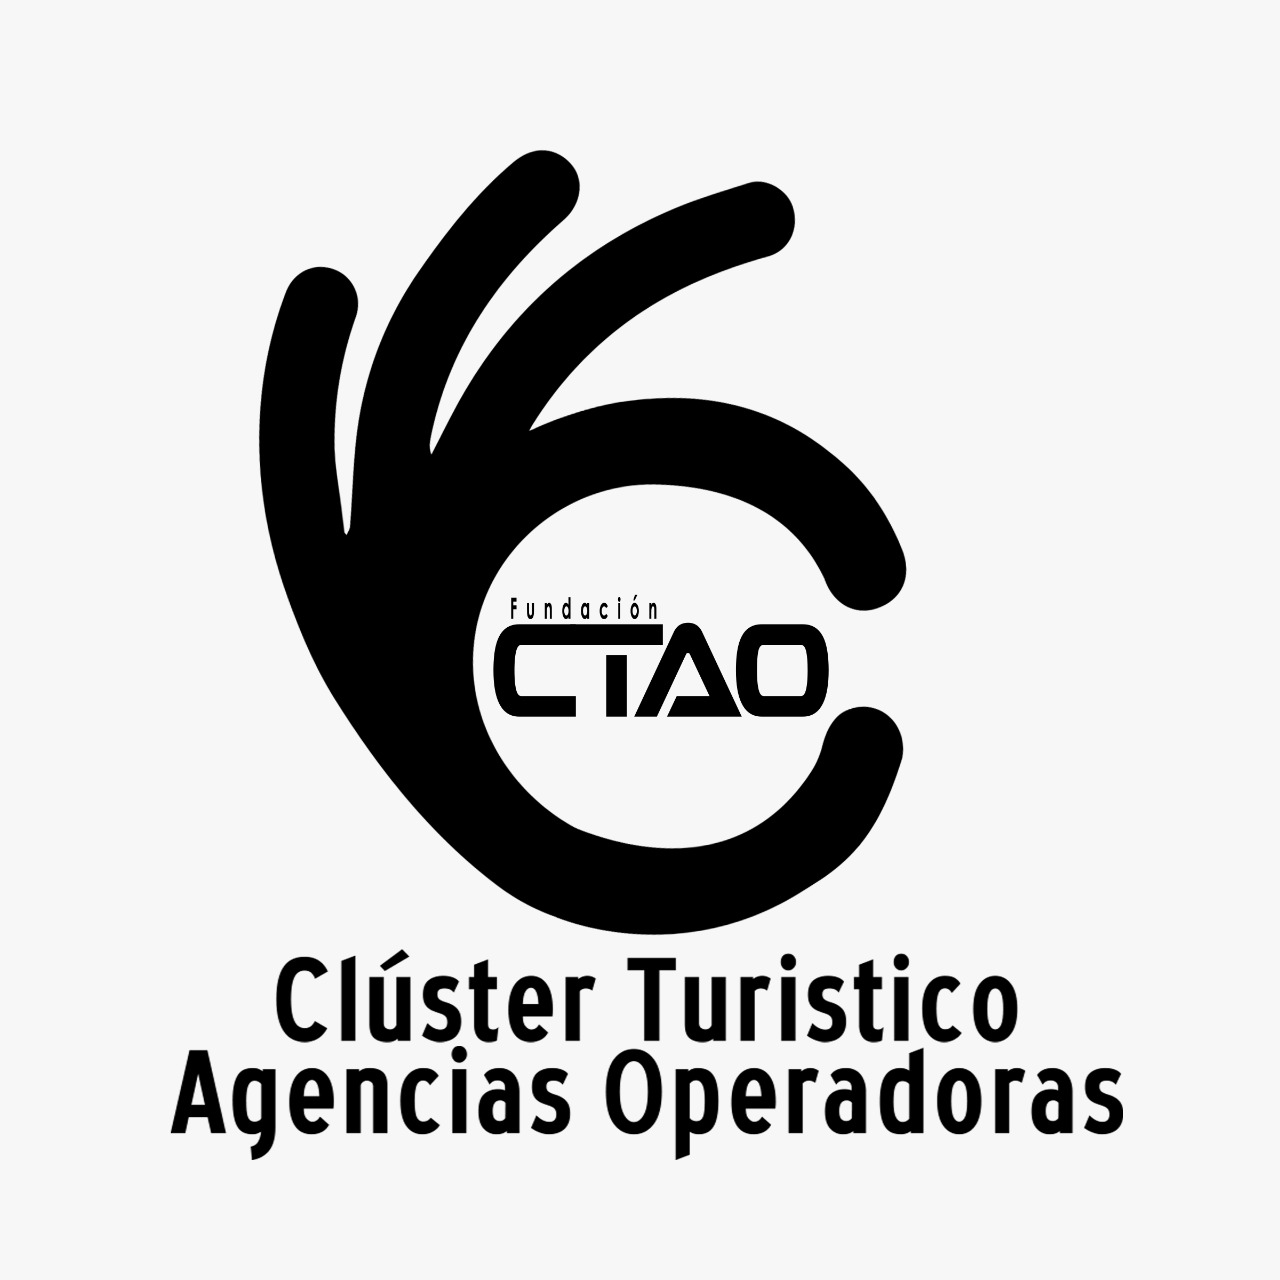 Clúster Turístico Agencias Operadoras CTAO